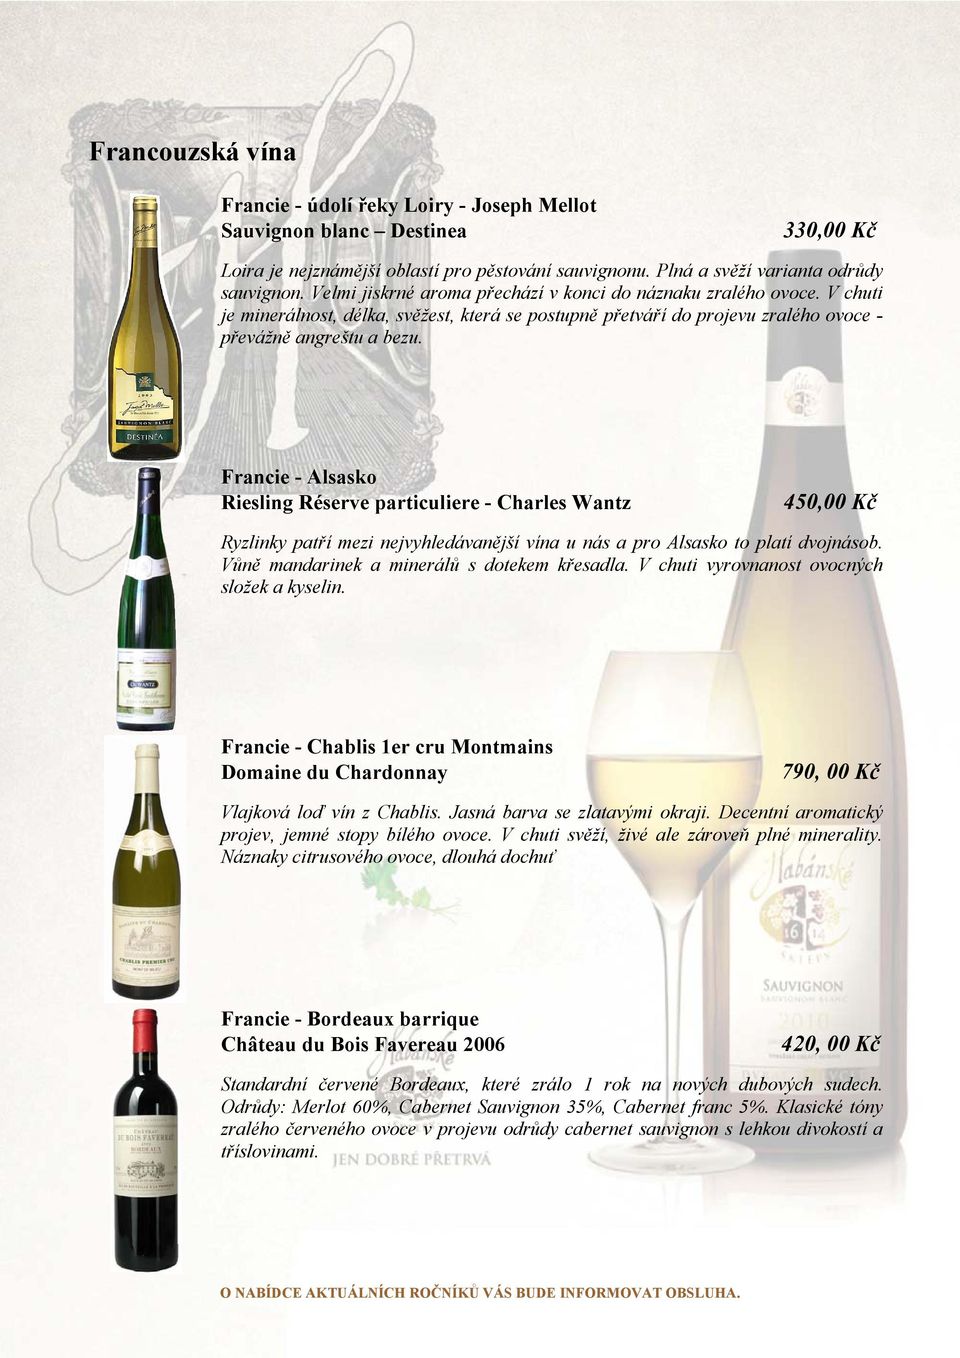 Francie - Alsasko Riesling Réserve particuliere - Charles Wantz 450,00 Kč Ryzlinky patří mezi nejvyhledávanější vína u nás a pro Alsasko to platí dvojnásob.